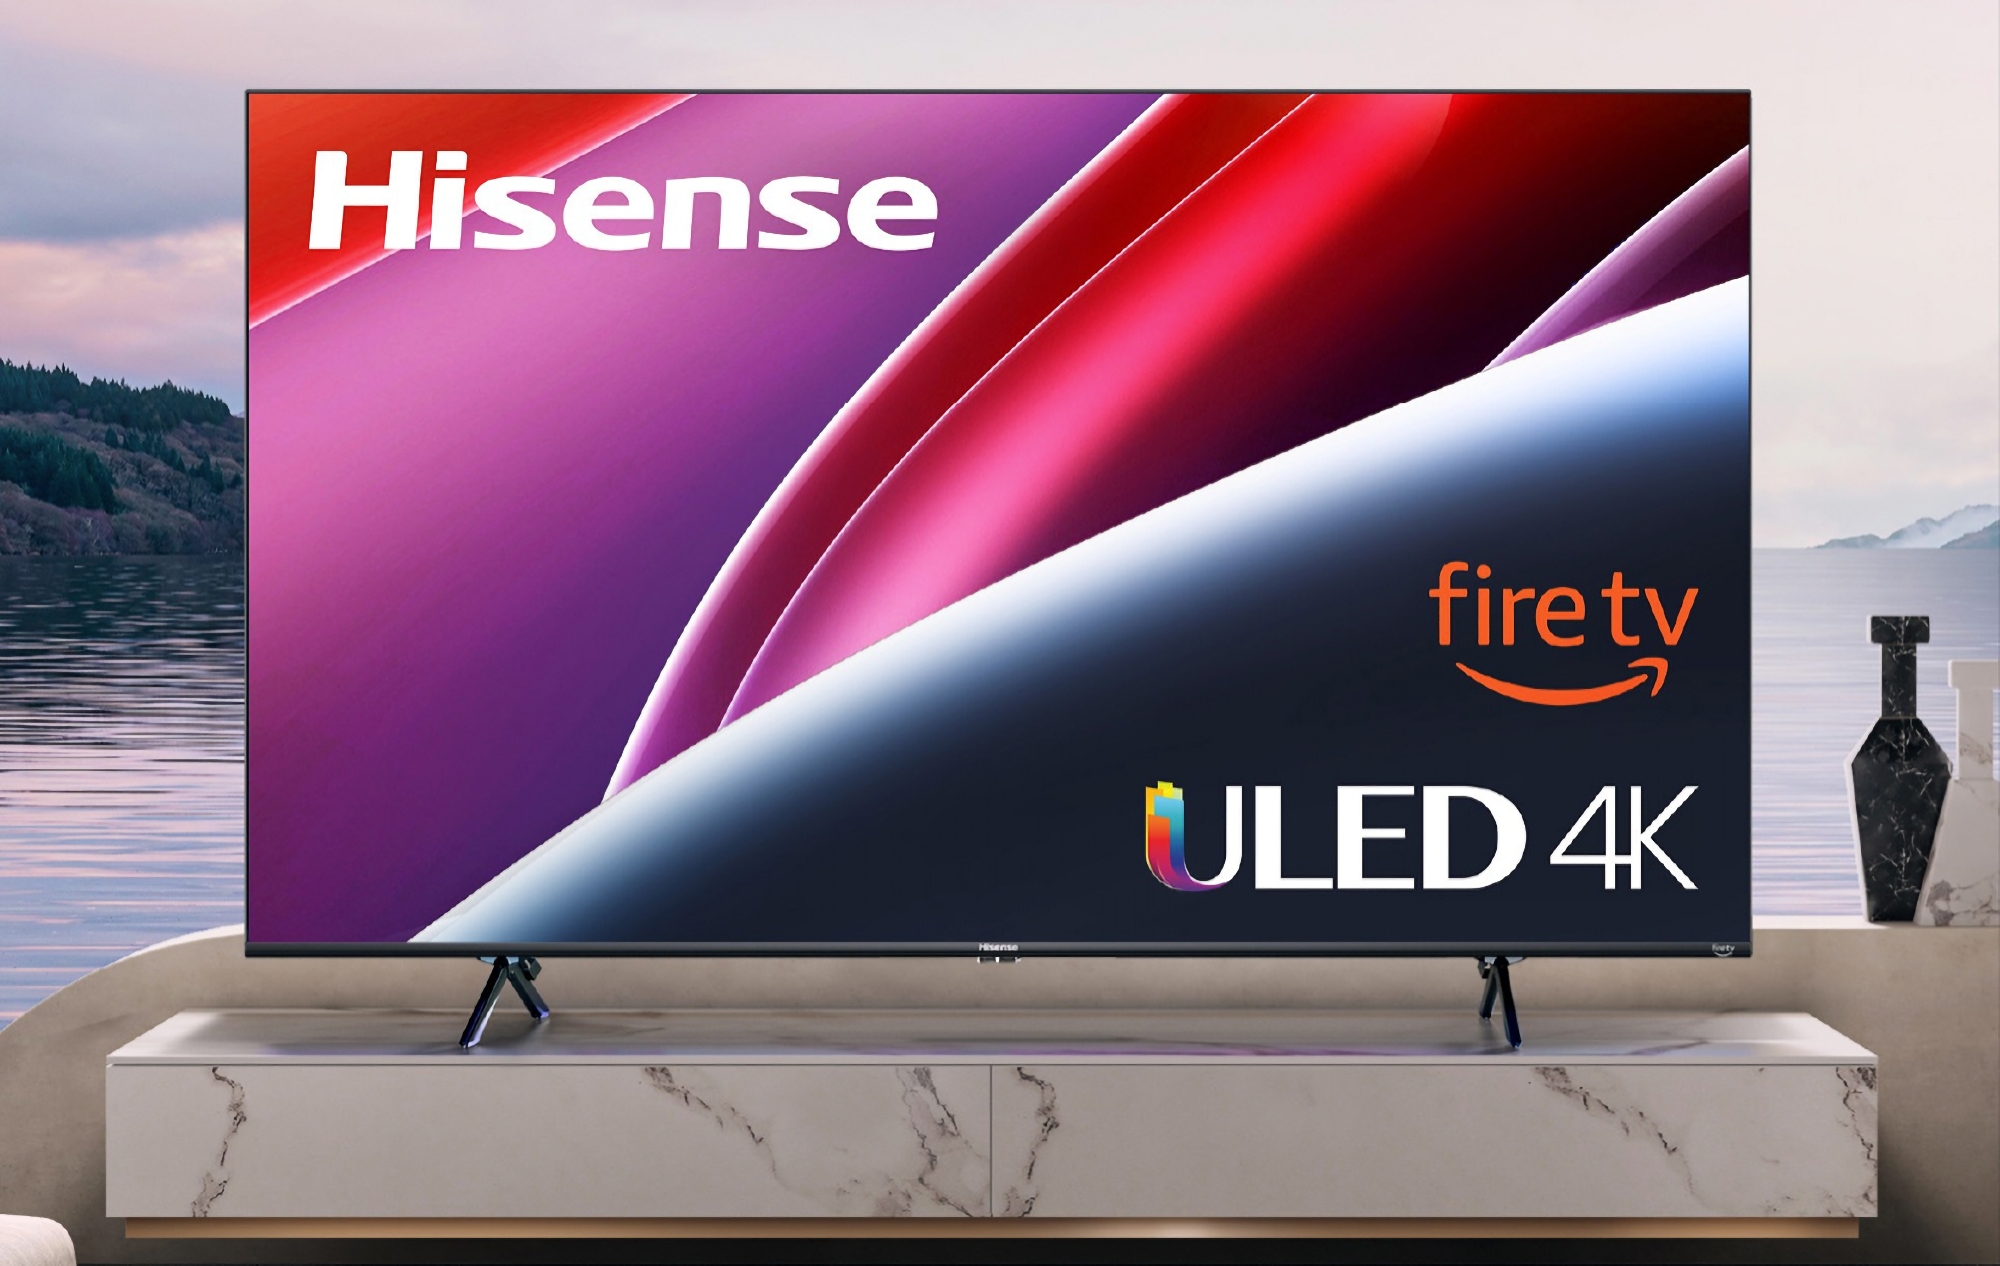 Le téléviseur intelligent Hisense ULED U6 de 58 pouces avec Fire TV à bord est disponible avec une réduction de 150 $ sur Amazon.